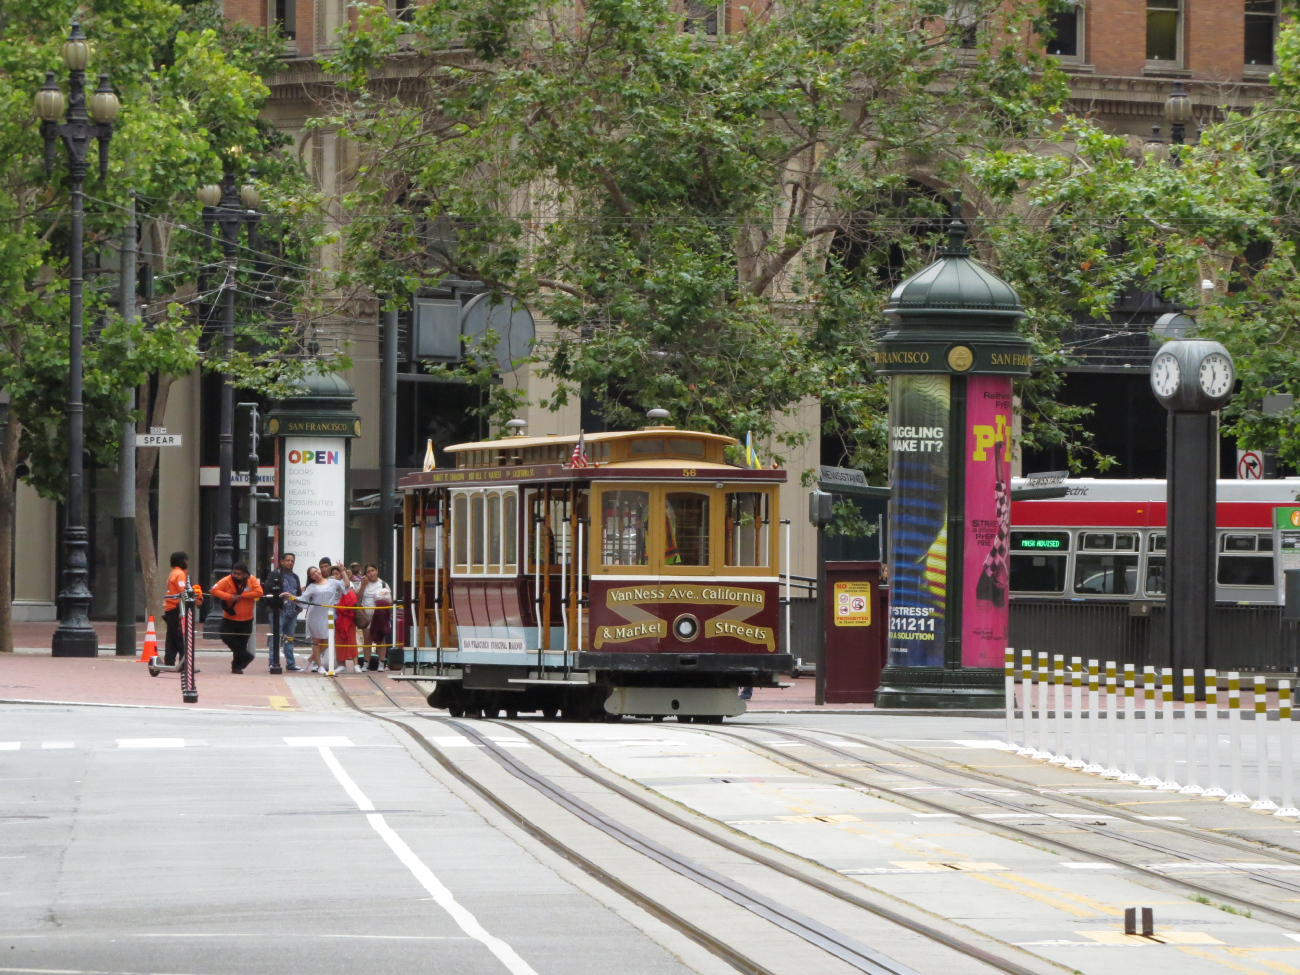 Сан-Франциско, область залива, California cable car № 56; Сан-Франциско, область залива — Линии и инфраструктура кабельного трамвая